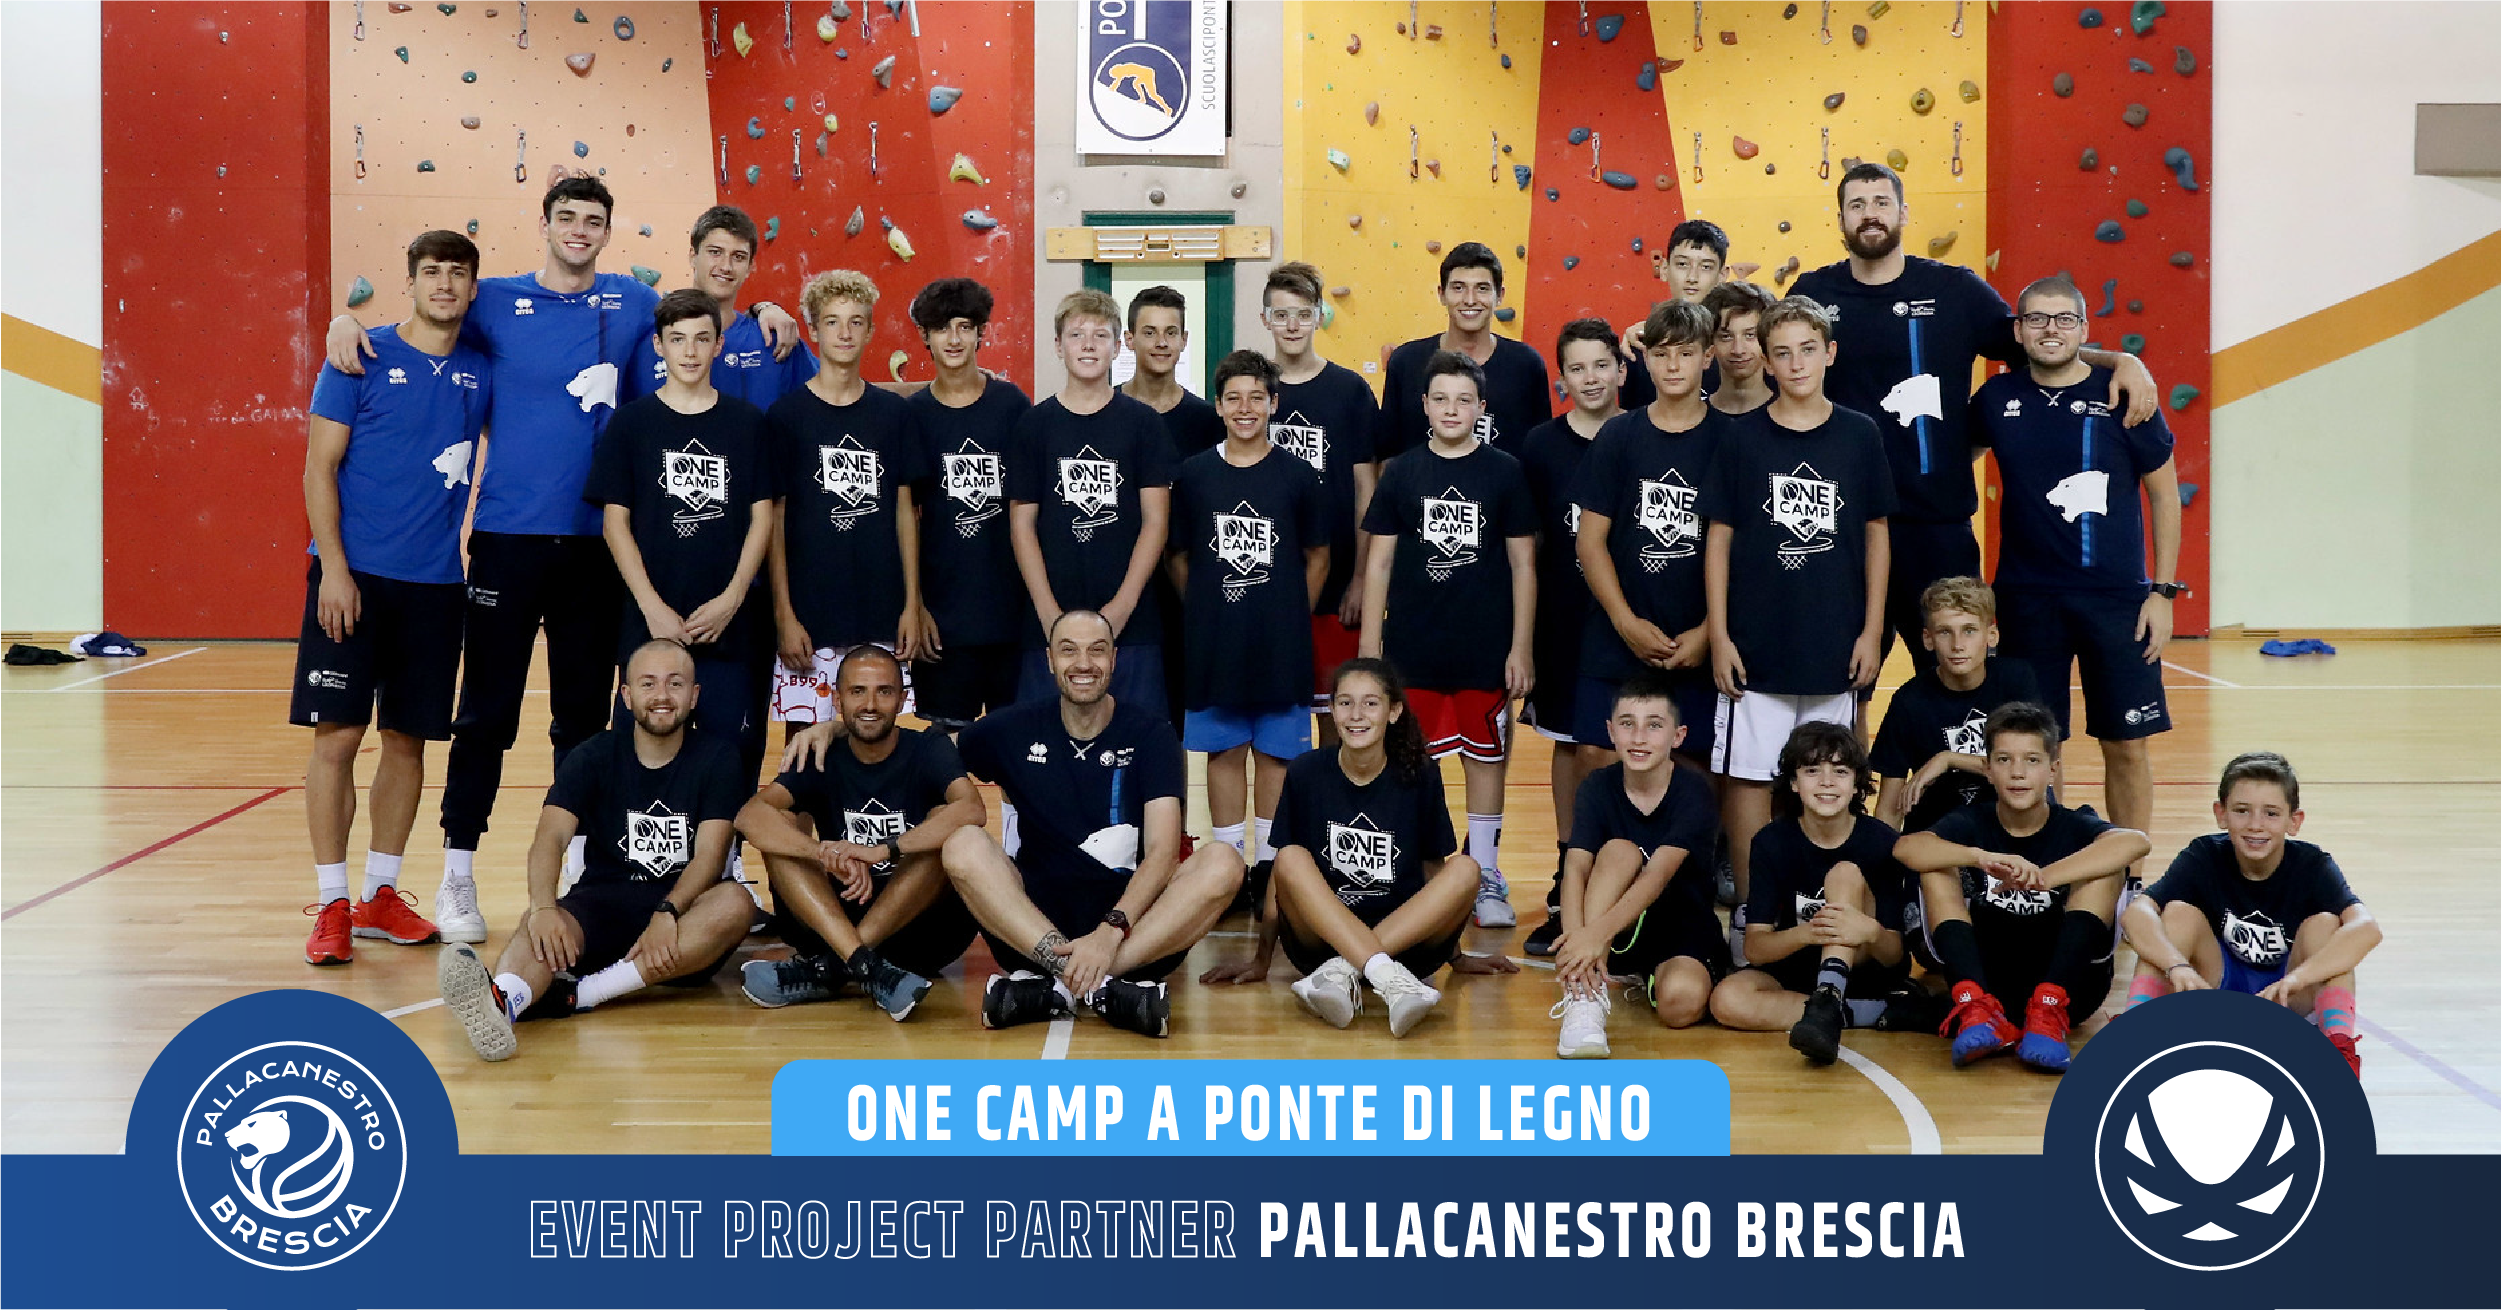 Event Project Partner Pallacanestro Brescia 5